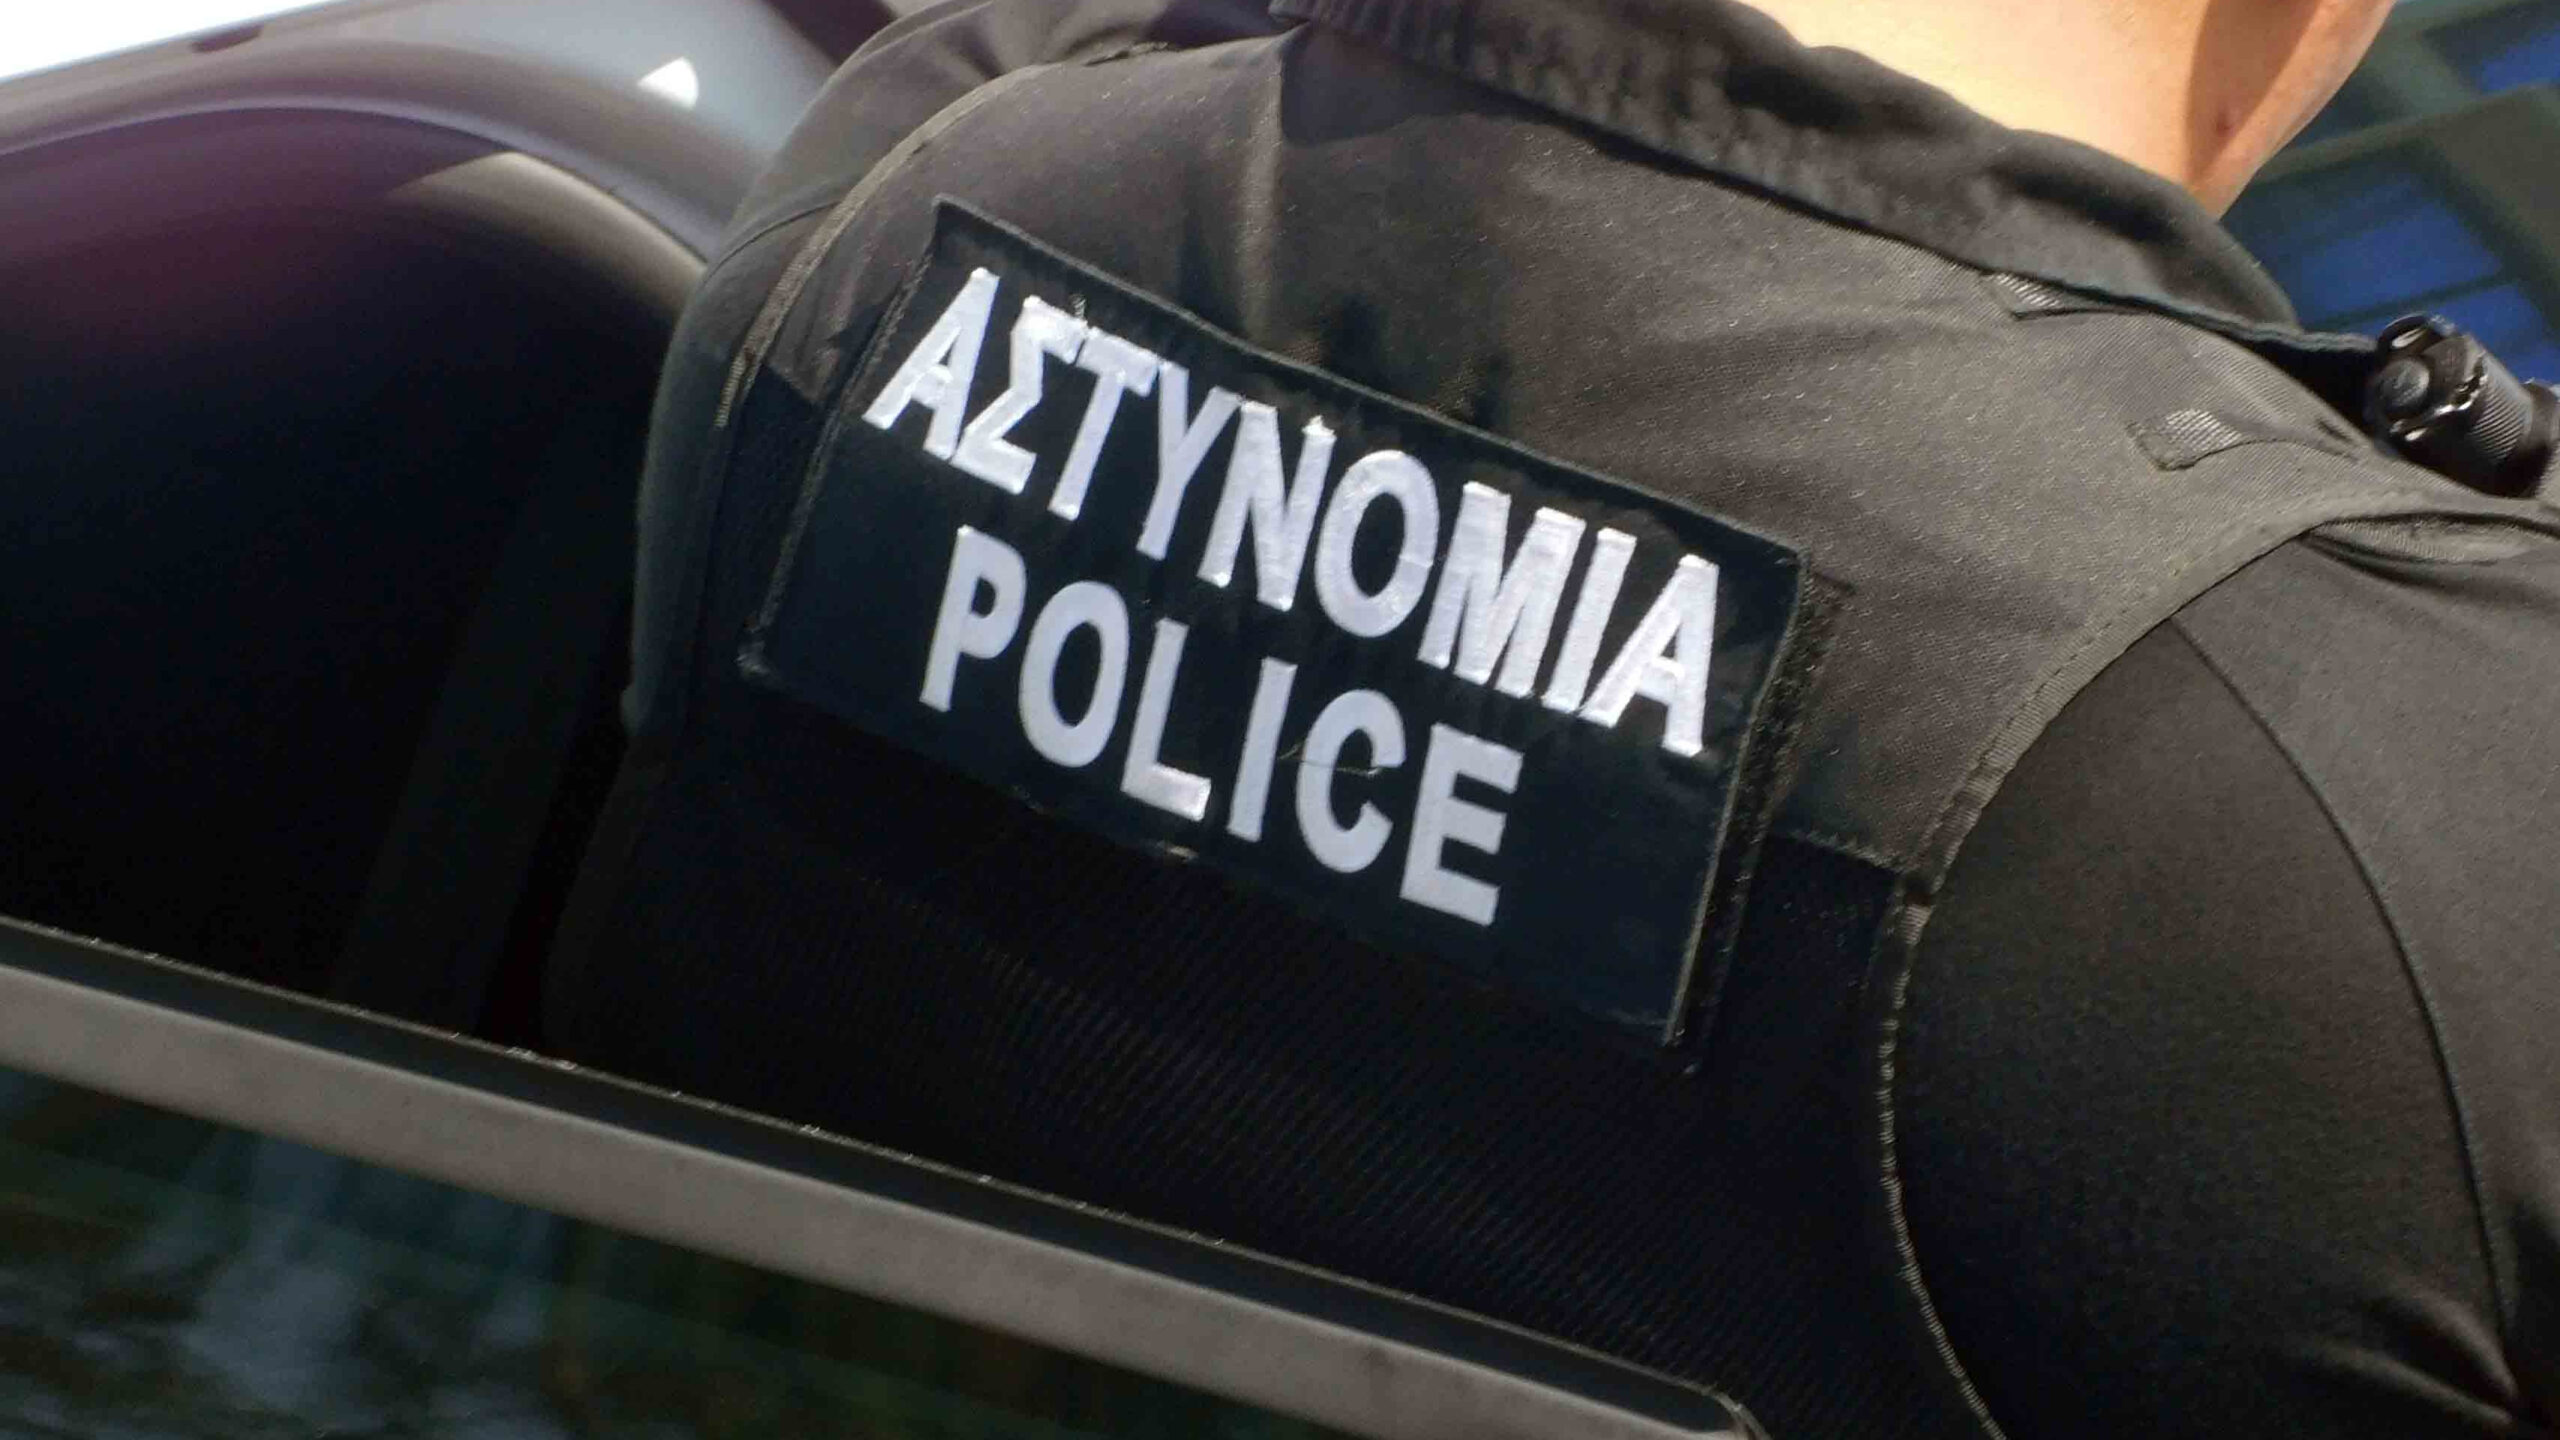 Σύλληψη προσώπων από την Αστυνομία για διάρρηξη κατοικίας στο ΠΟΛΕΜΙ-Αναστάτωση στην περιοχή